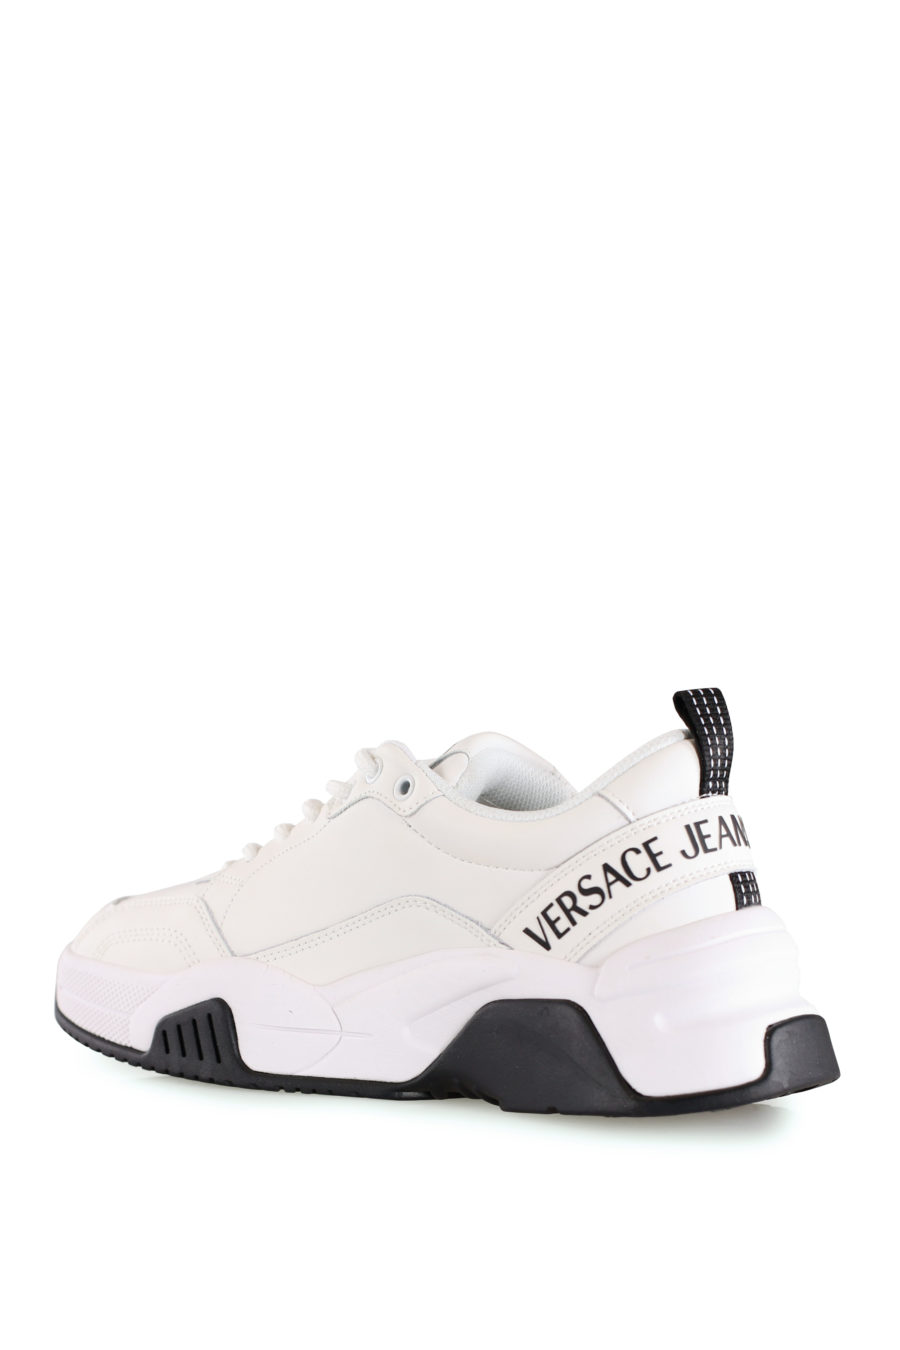 Zapatillas blancas con logotipo negro de la marca - IMG 8446 copia